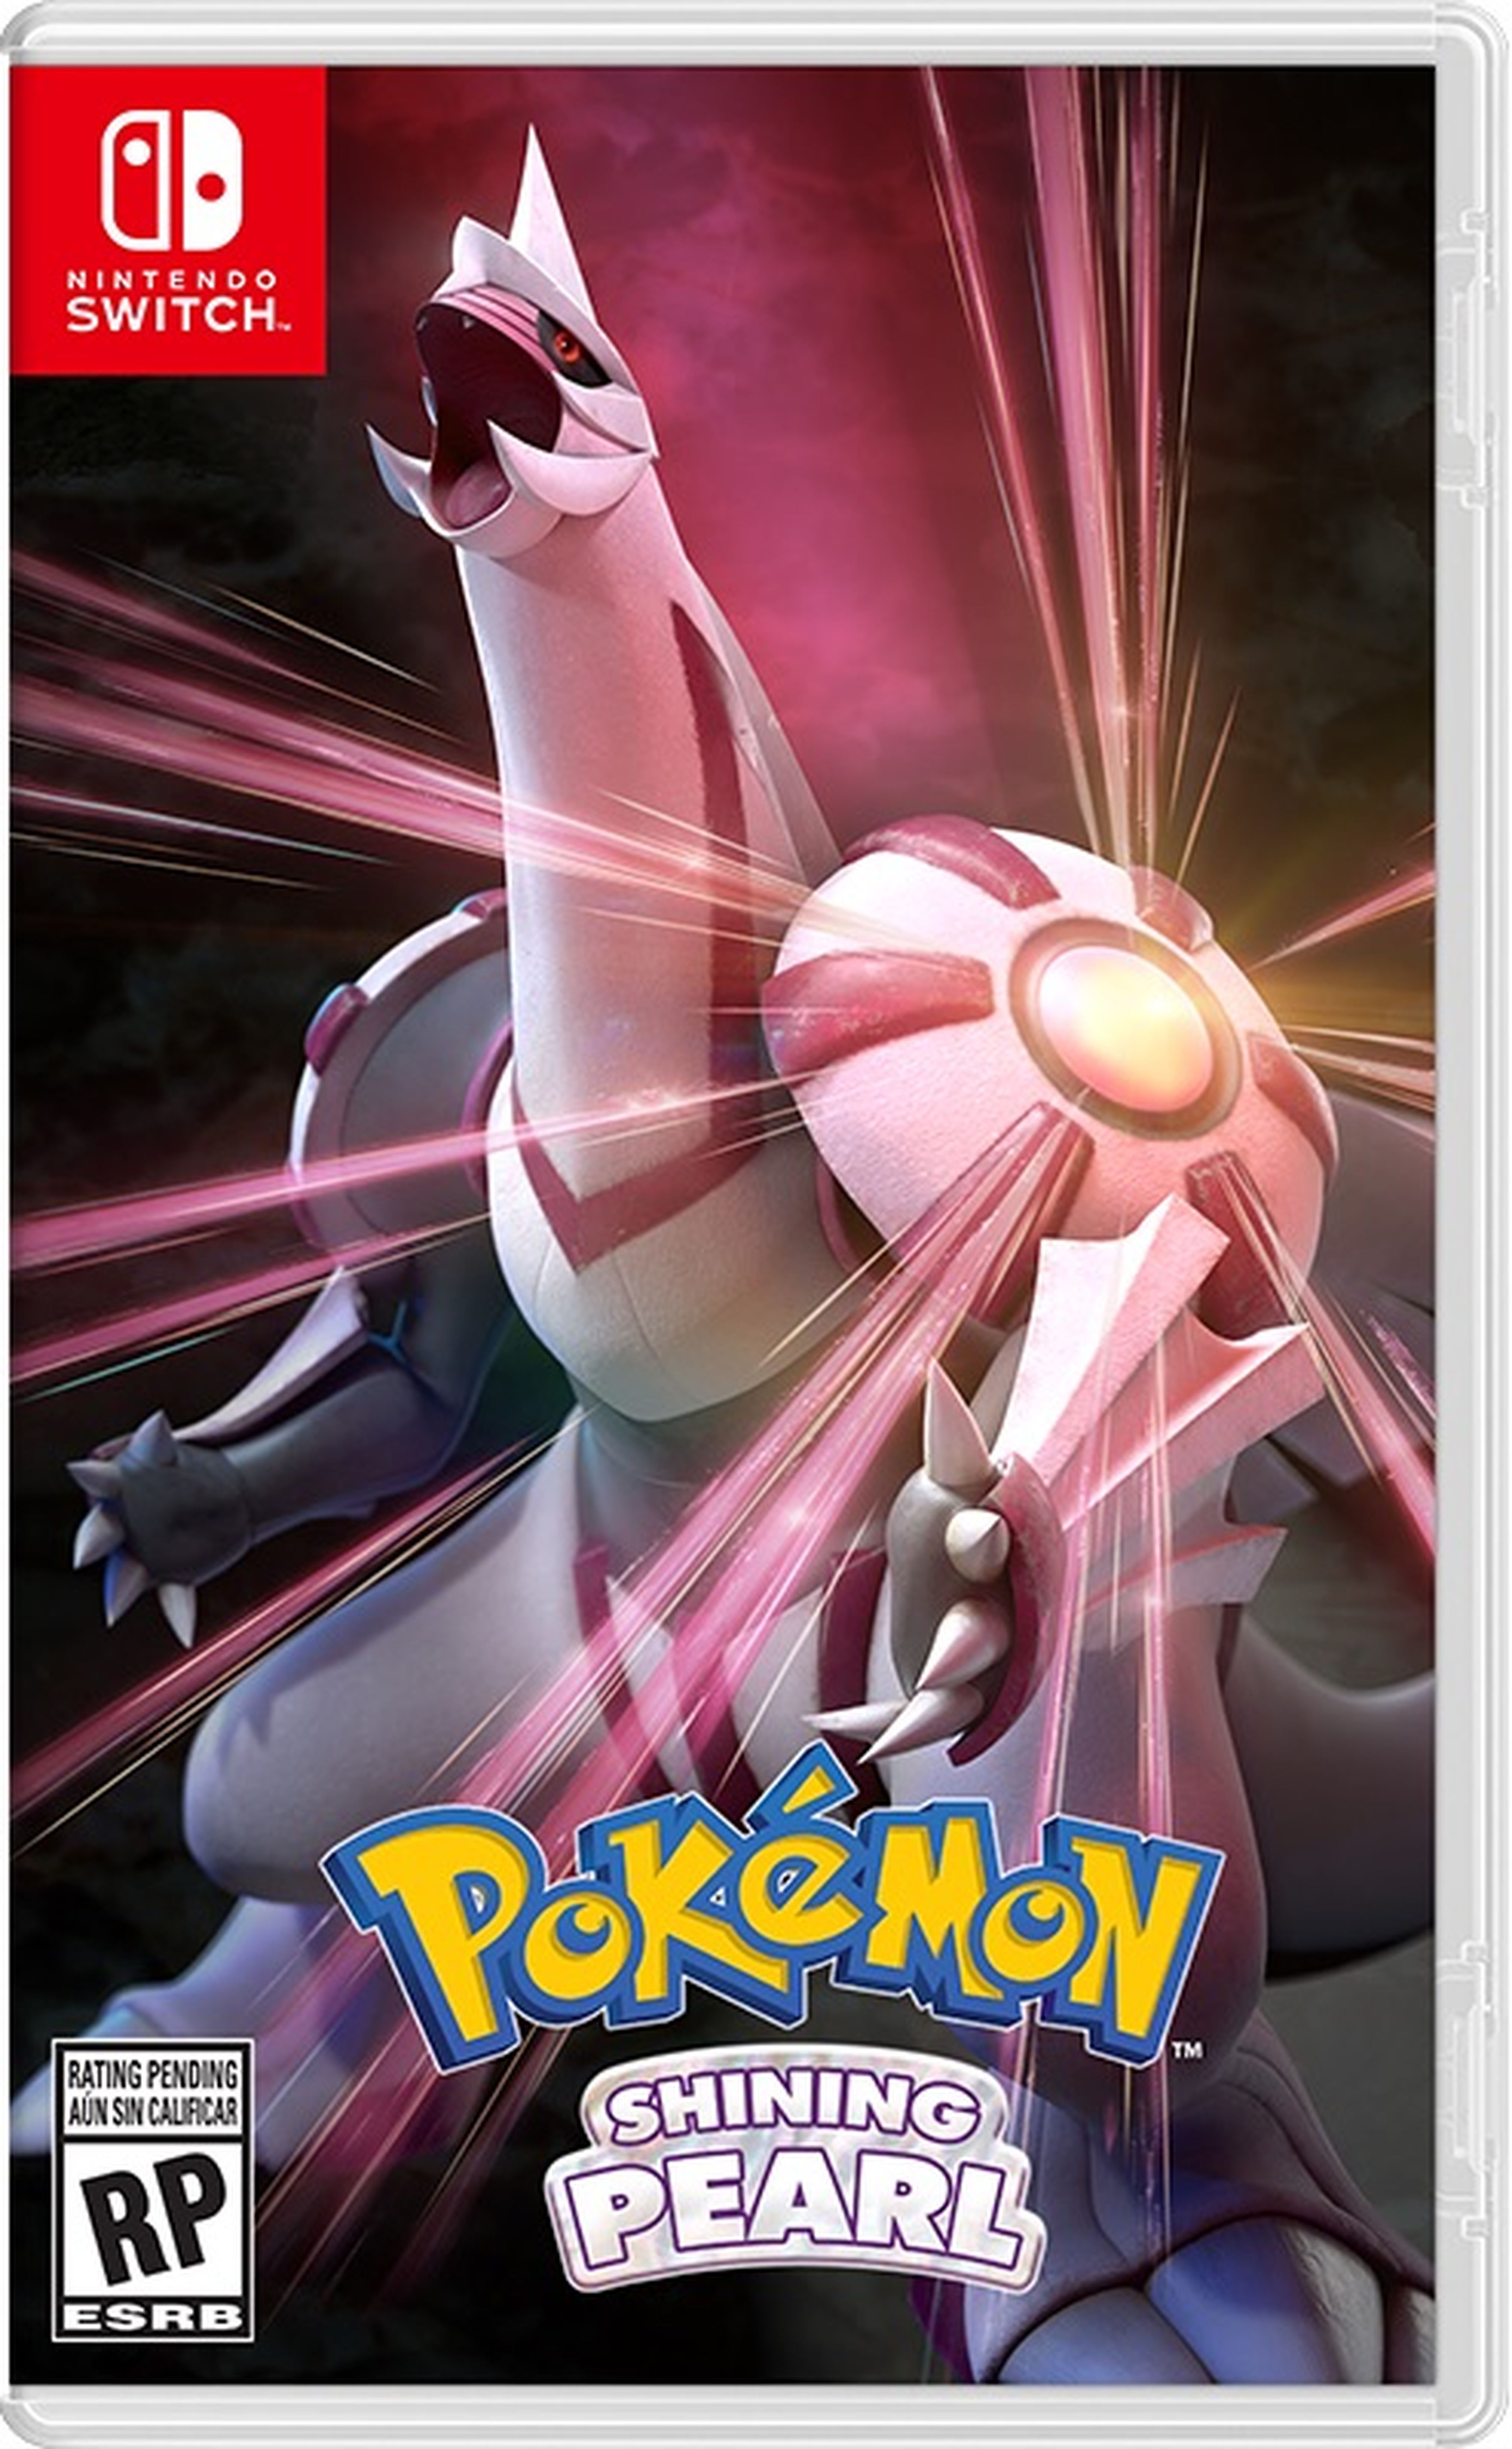 Nuevos detalles desvelados de Pokémon Diamante brillante y Perla reluciente  - Strike-GamesStrike-Games